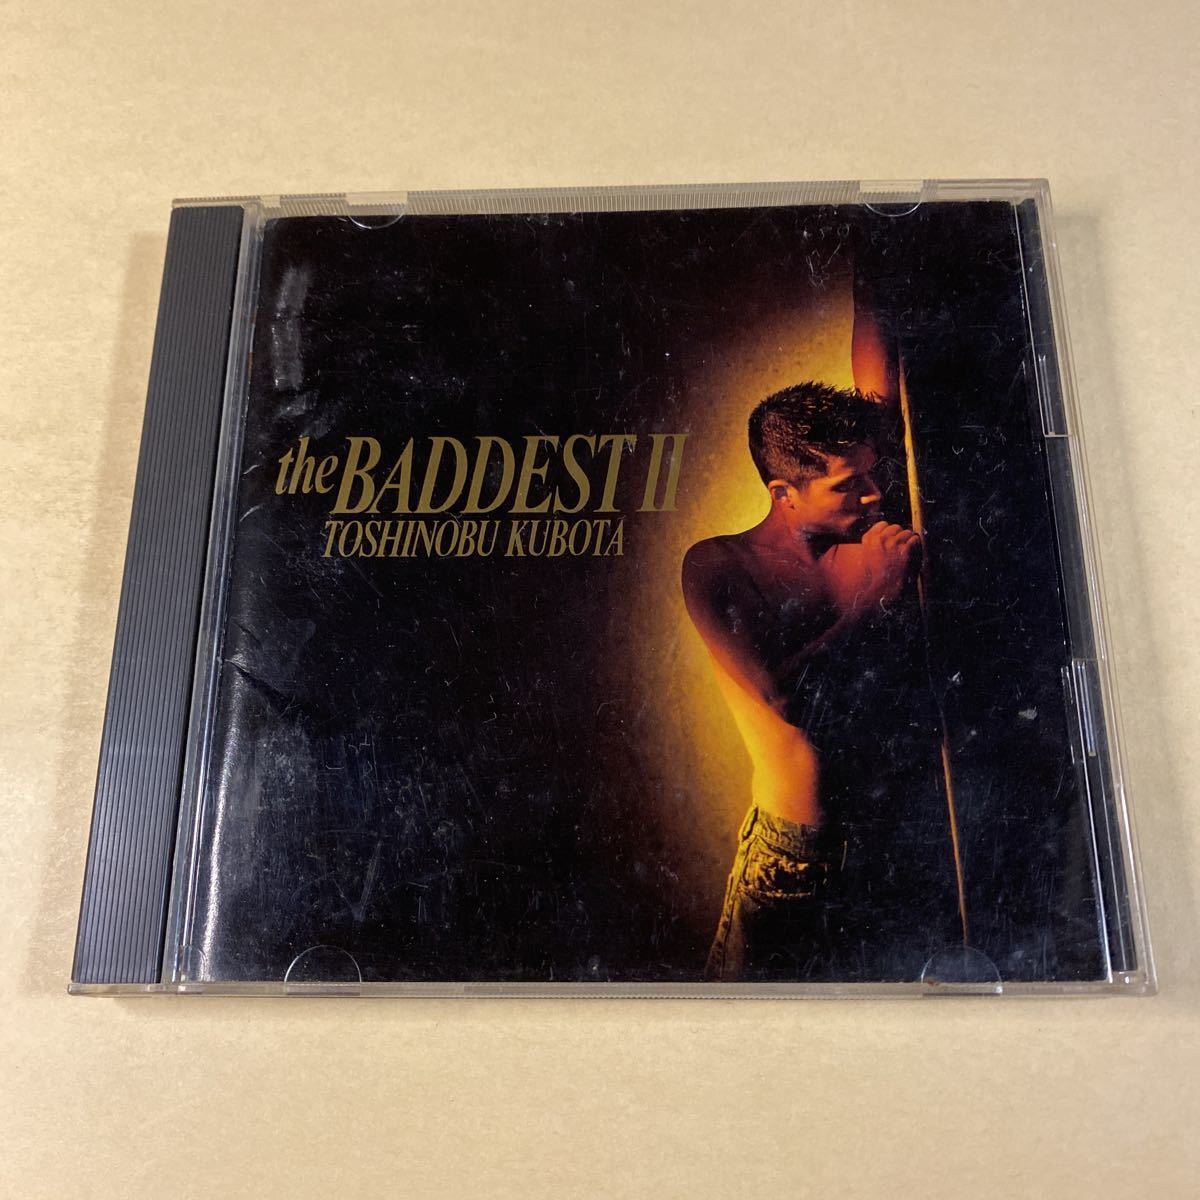 久保田利伸 1CD「the BADDEST II」シール付き_画像3